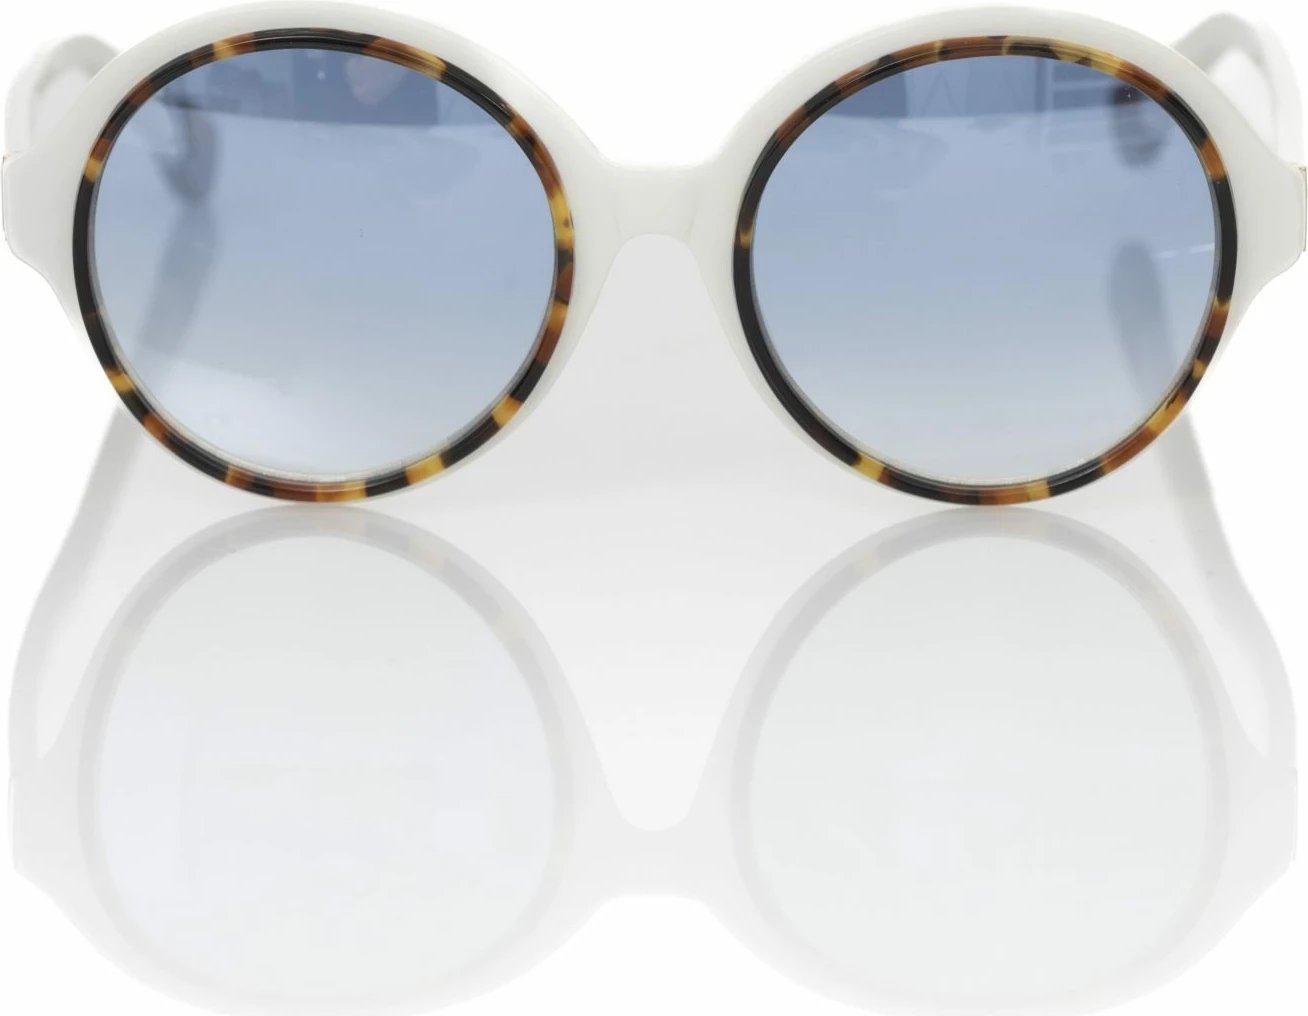 Syze dielli për femra Frankie Morello, të bardha